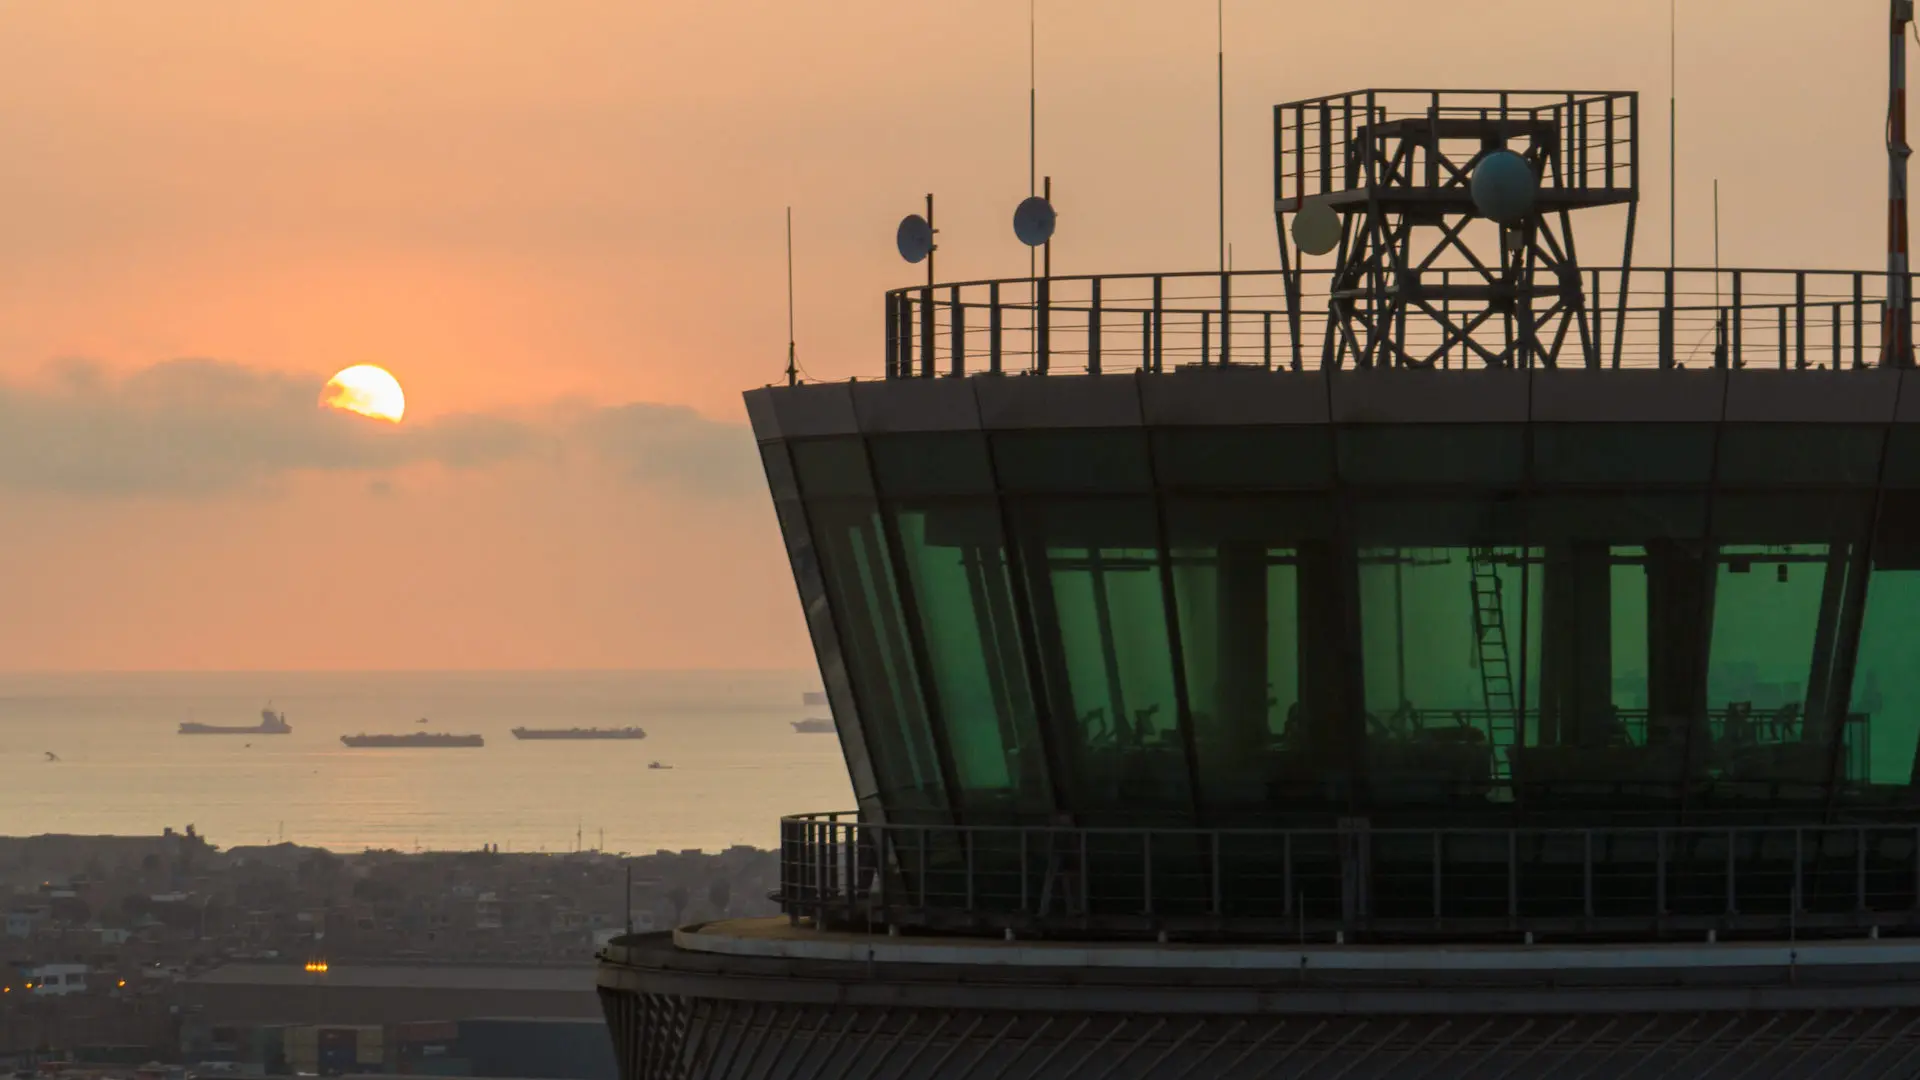 Así es la nueva torre de control del aeropuerto de Lima en Perú: imágenes